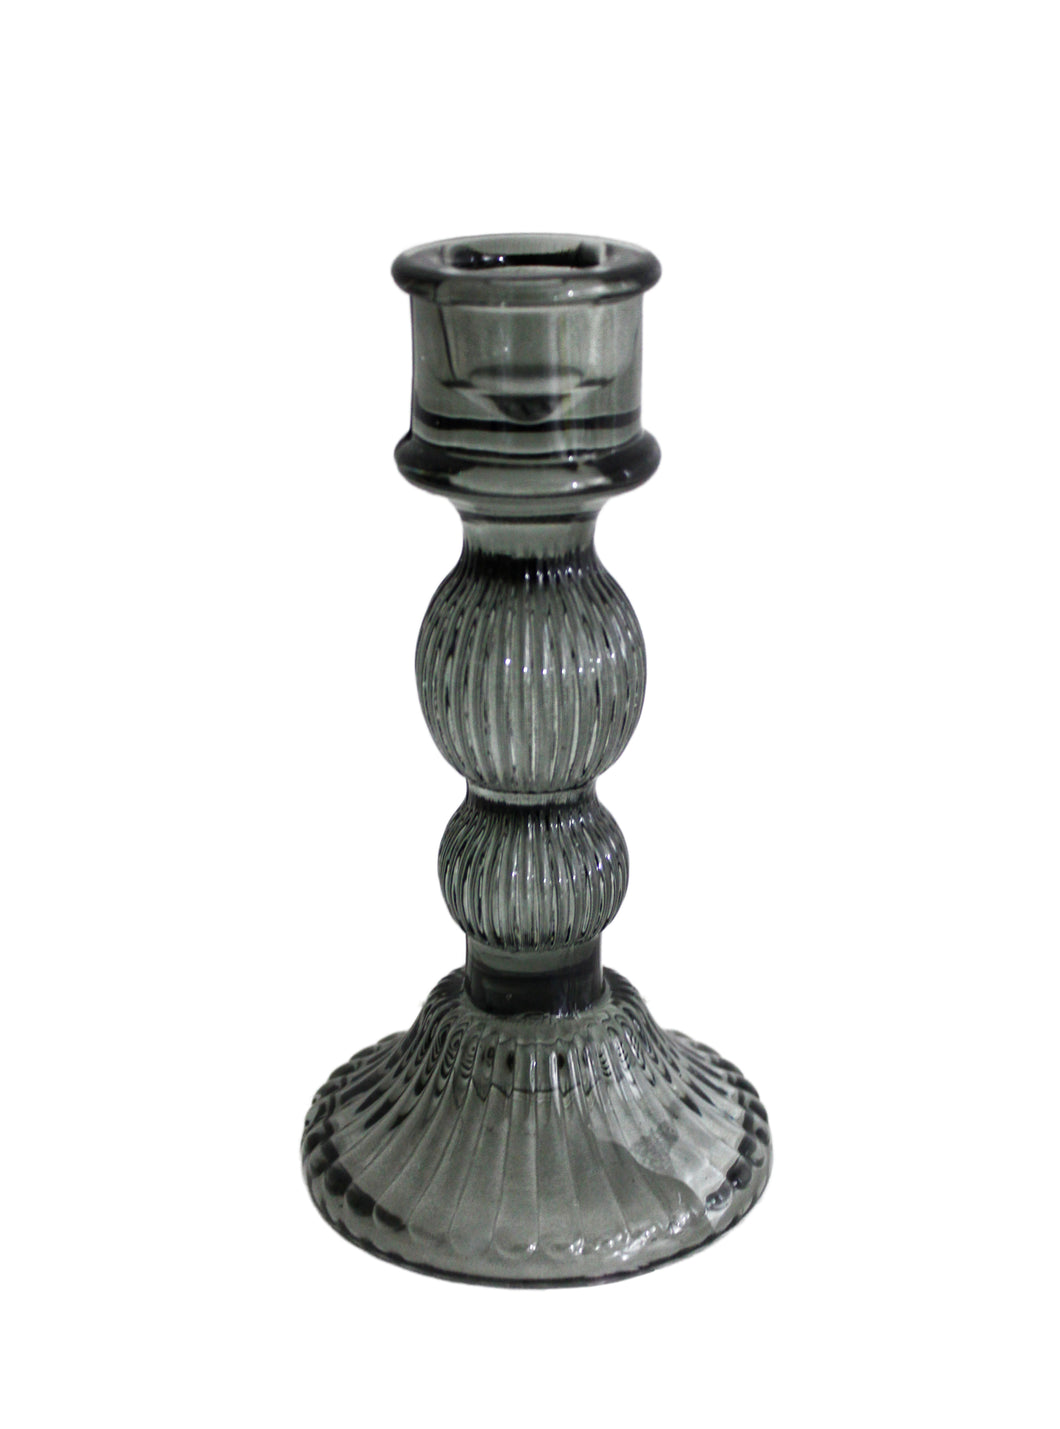 Kerzenständer aus Glas in dark grey, Höhe 15 cm, Durchmesser Kerzenfassung 2,2 cm